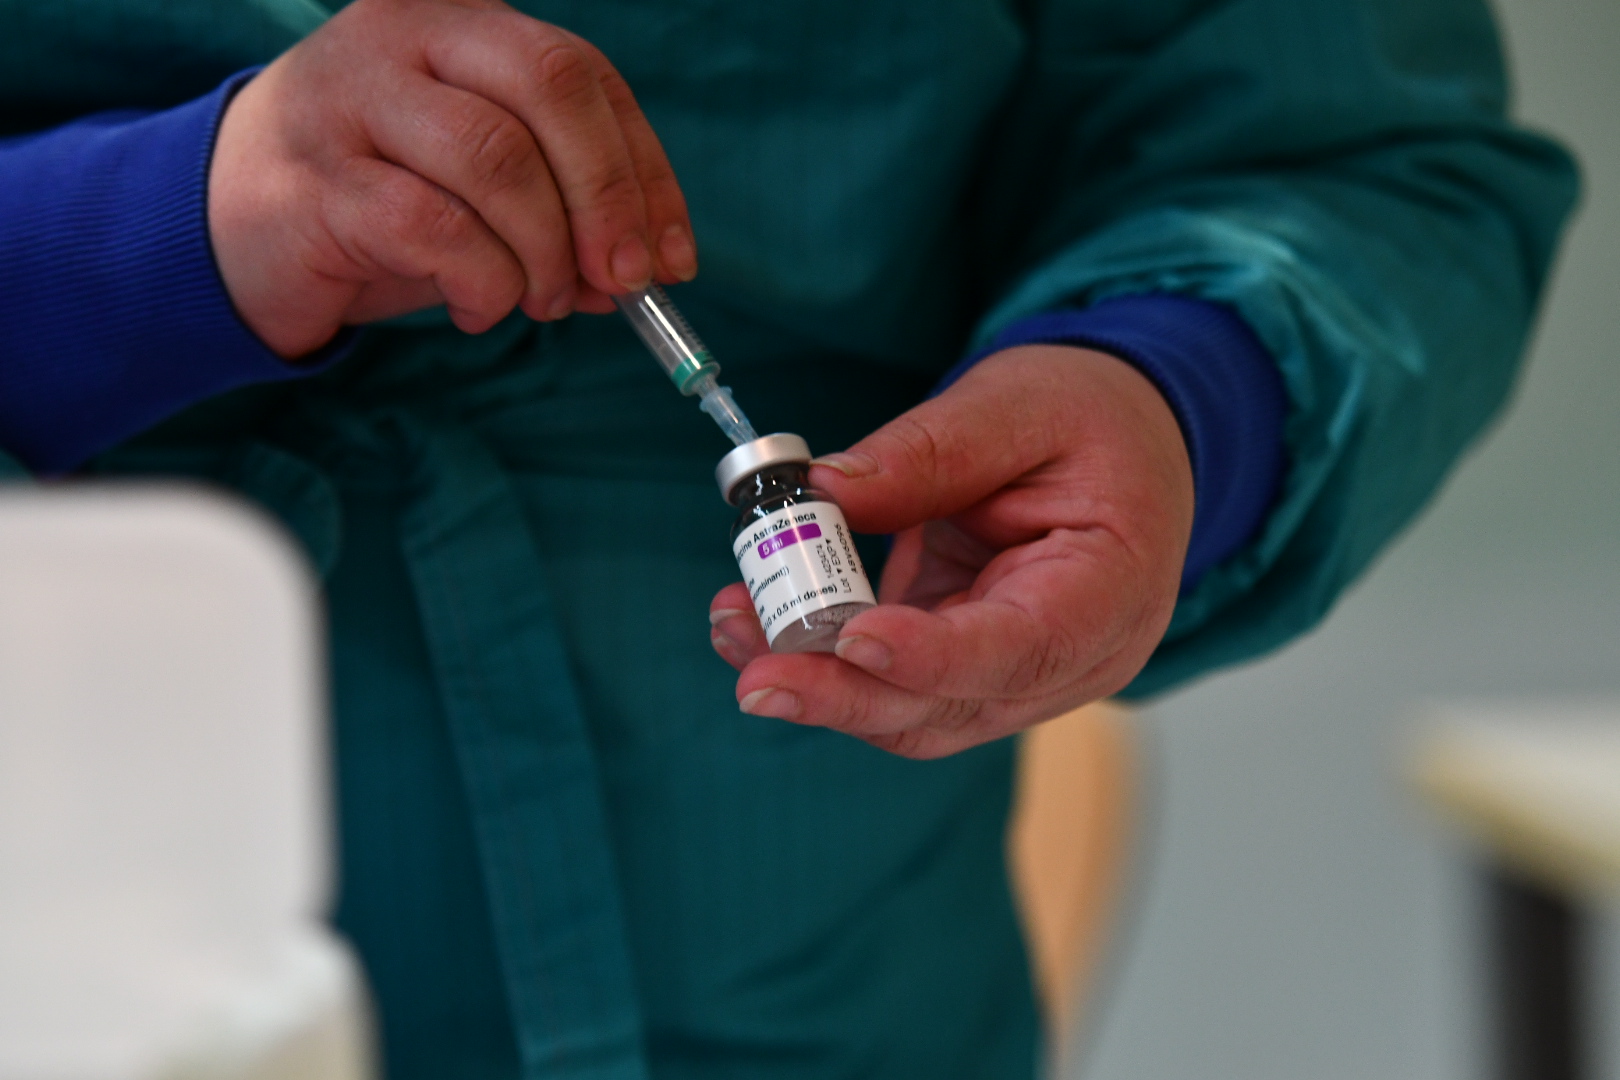 Hrvaška in Madžarska vzajemno priznavata potrdila o cepljenju